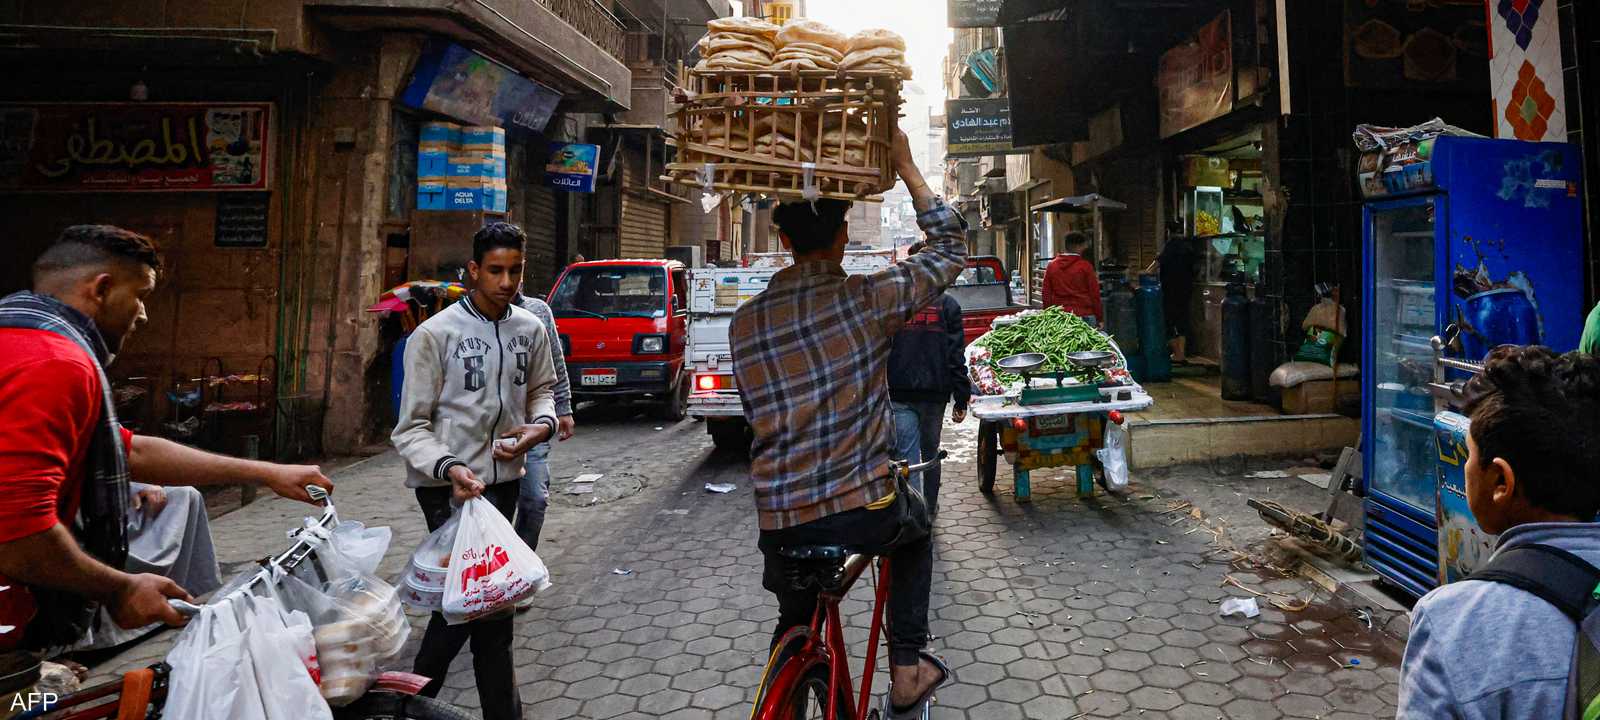 اقتصاد مصر - أحد شوارع الأحياء القديمة في القاهرة